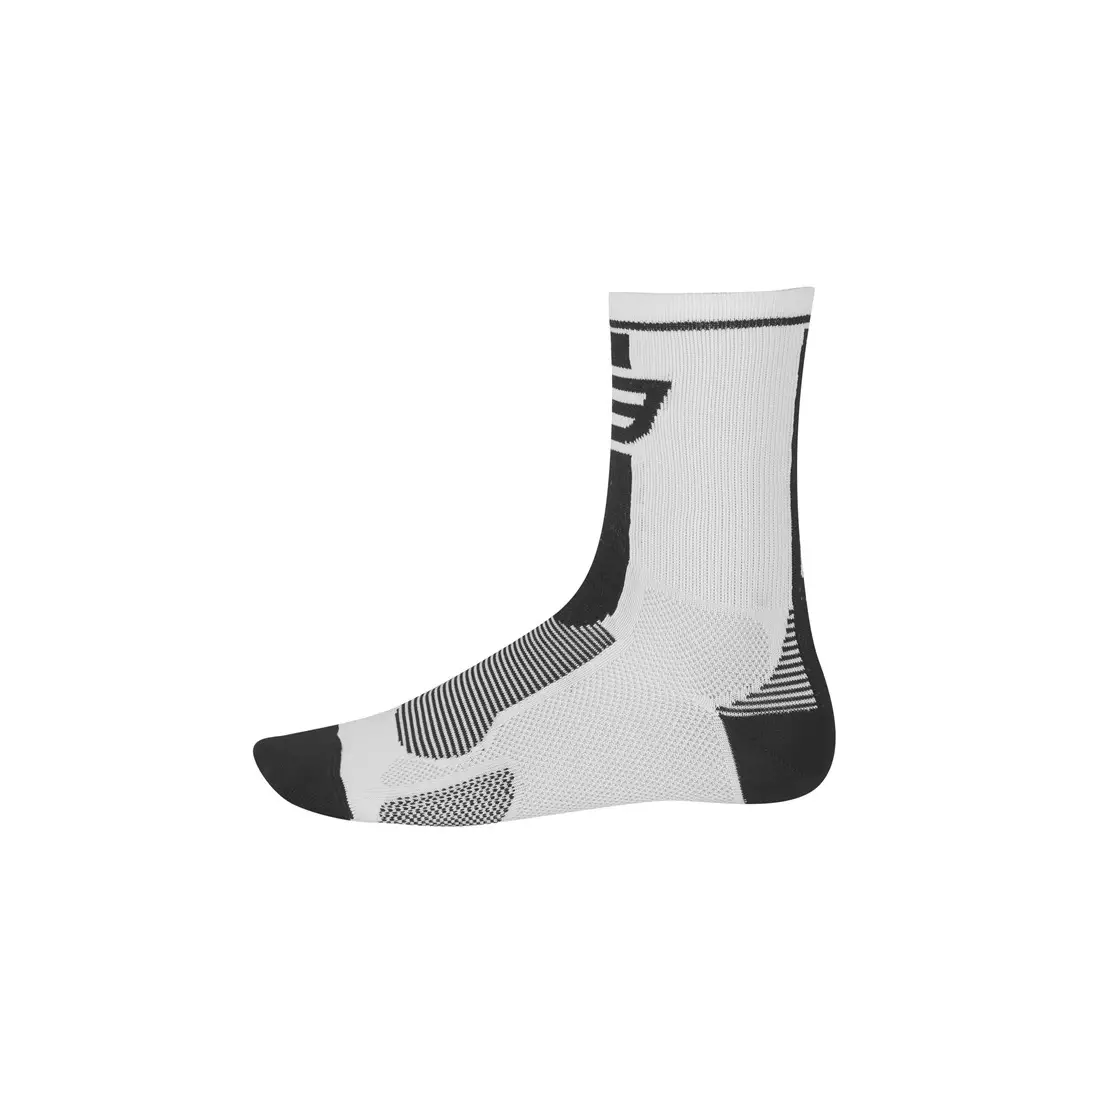 Sportovní ponožky FORCE LONG 900985/900995 - bílé a černé